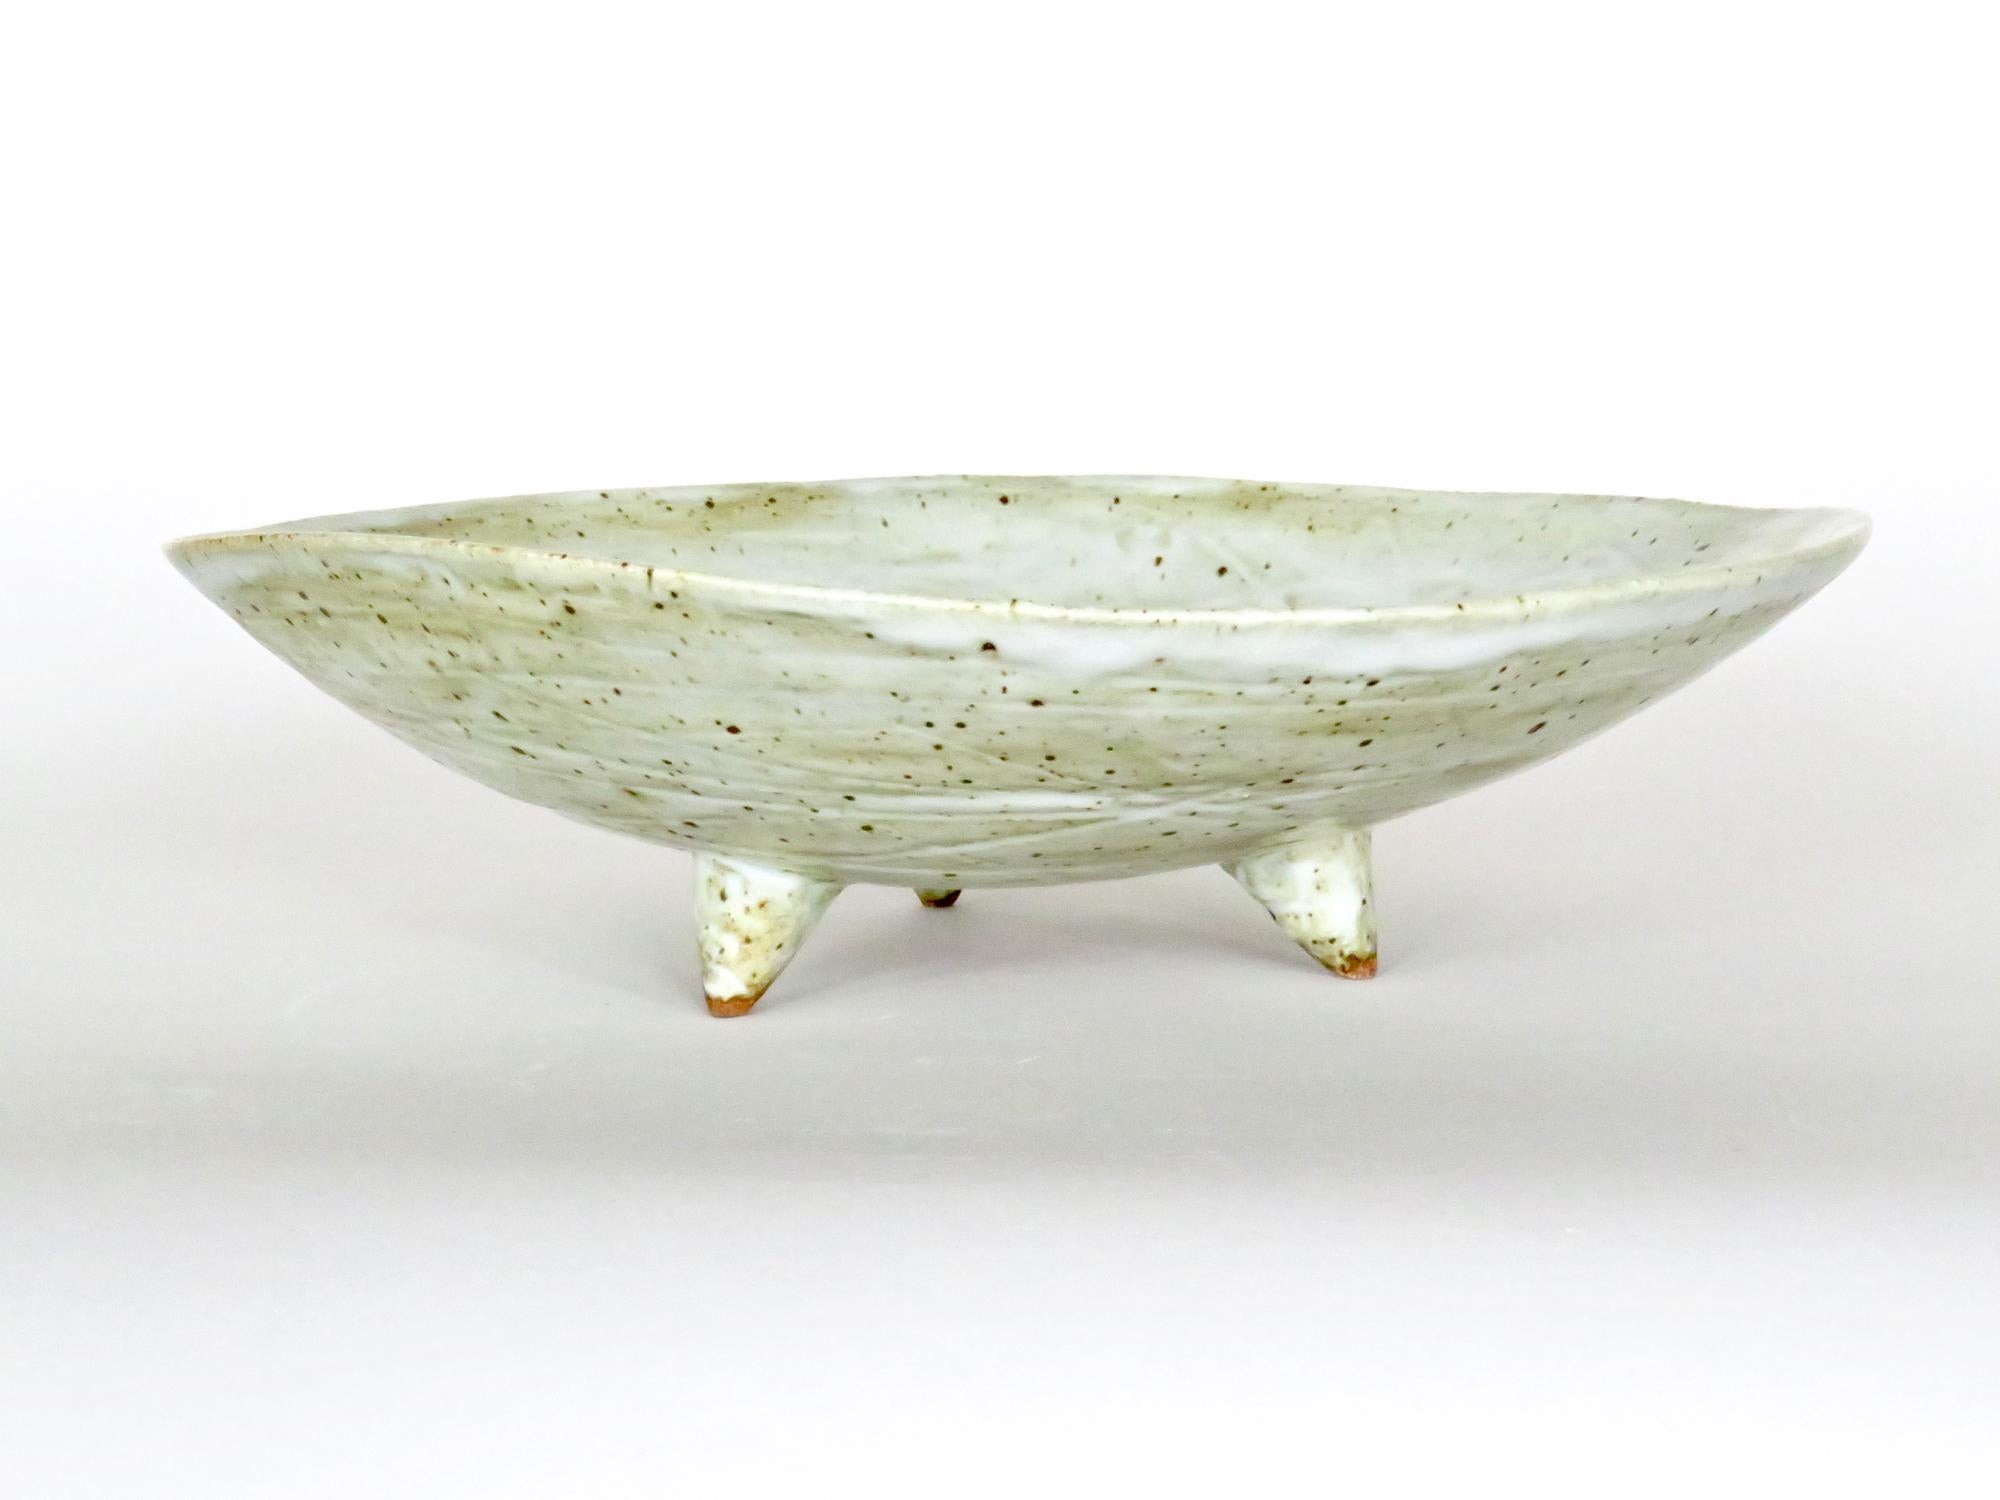 Large Footed Ceramic Serving Bowl, Off-White Speckled Glaze, Hand Built 3